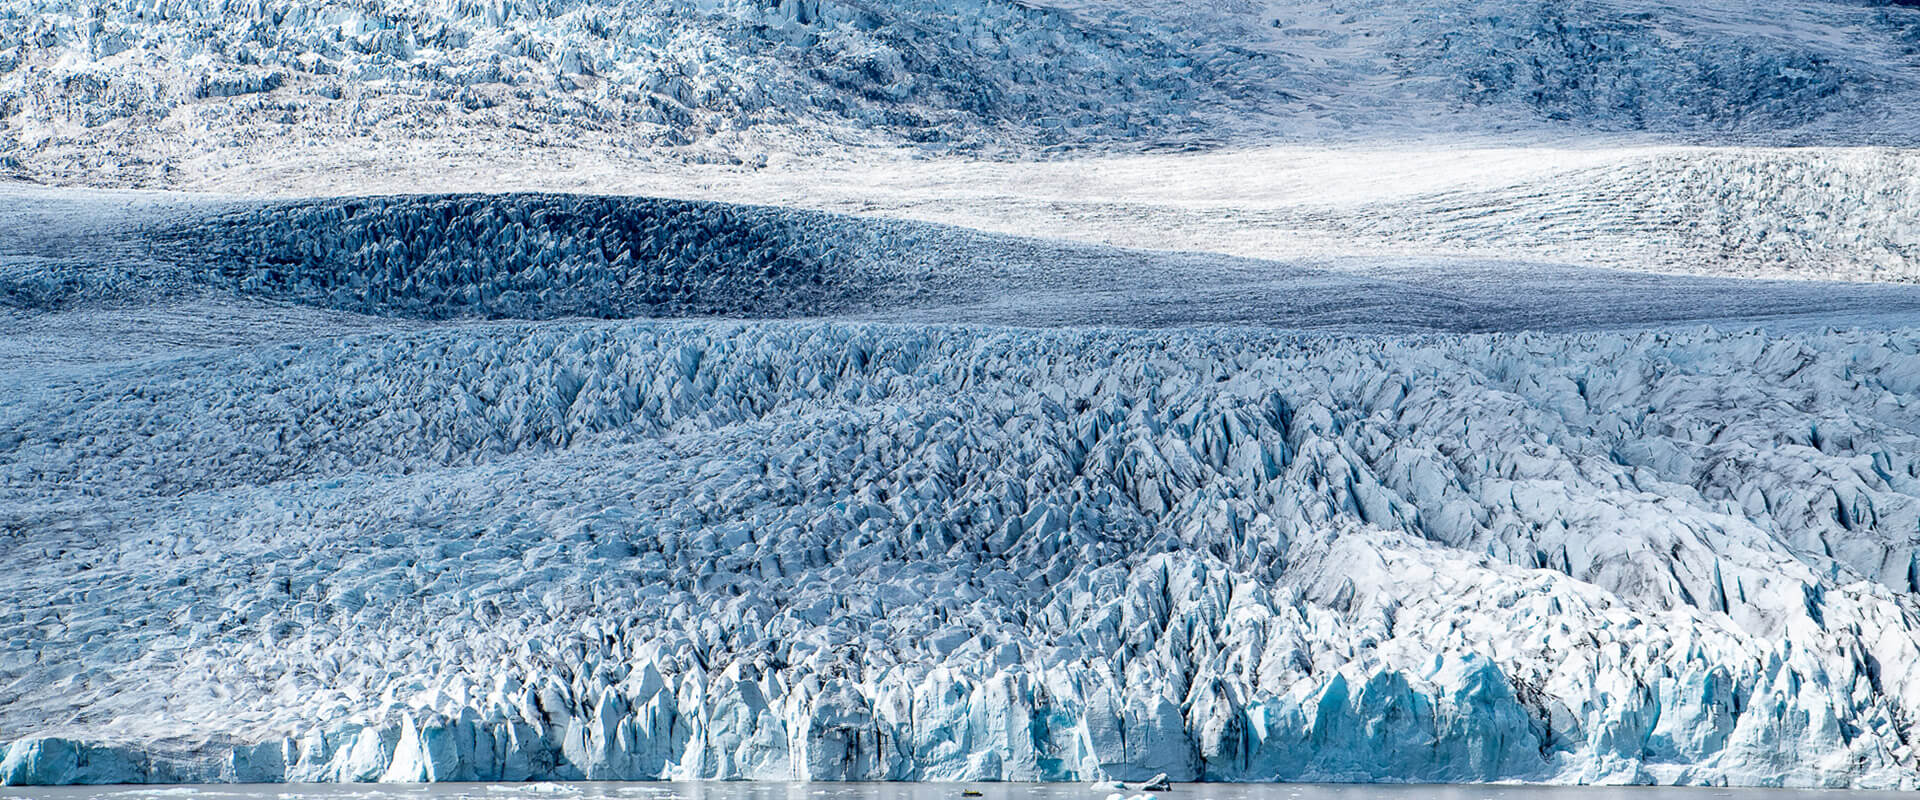 Jokulsarlon, la laguna glaciar de Islandia más famosa